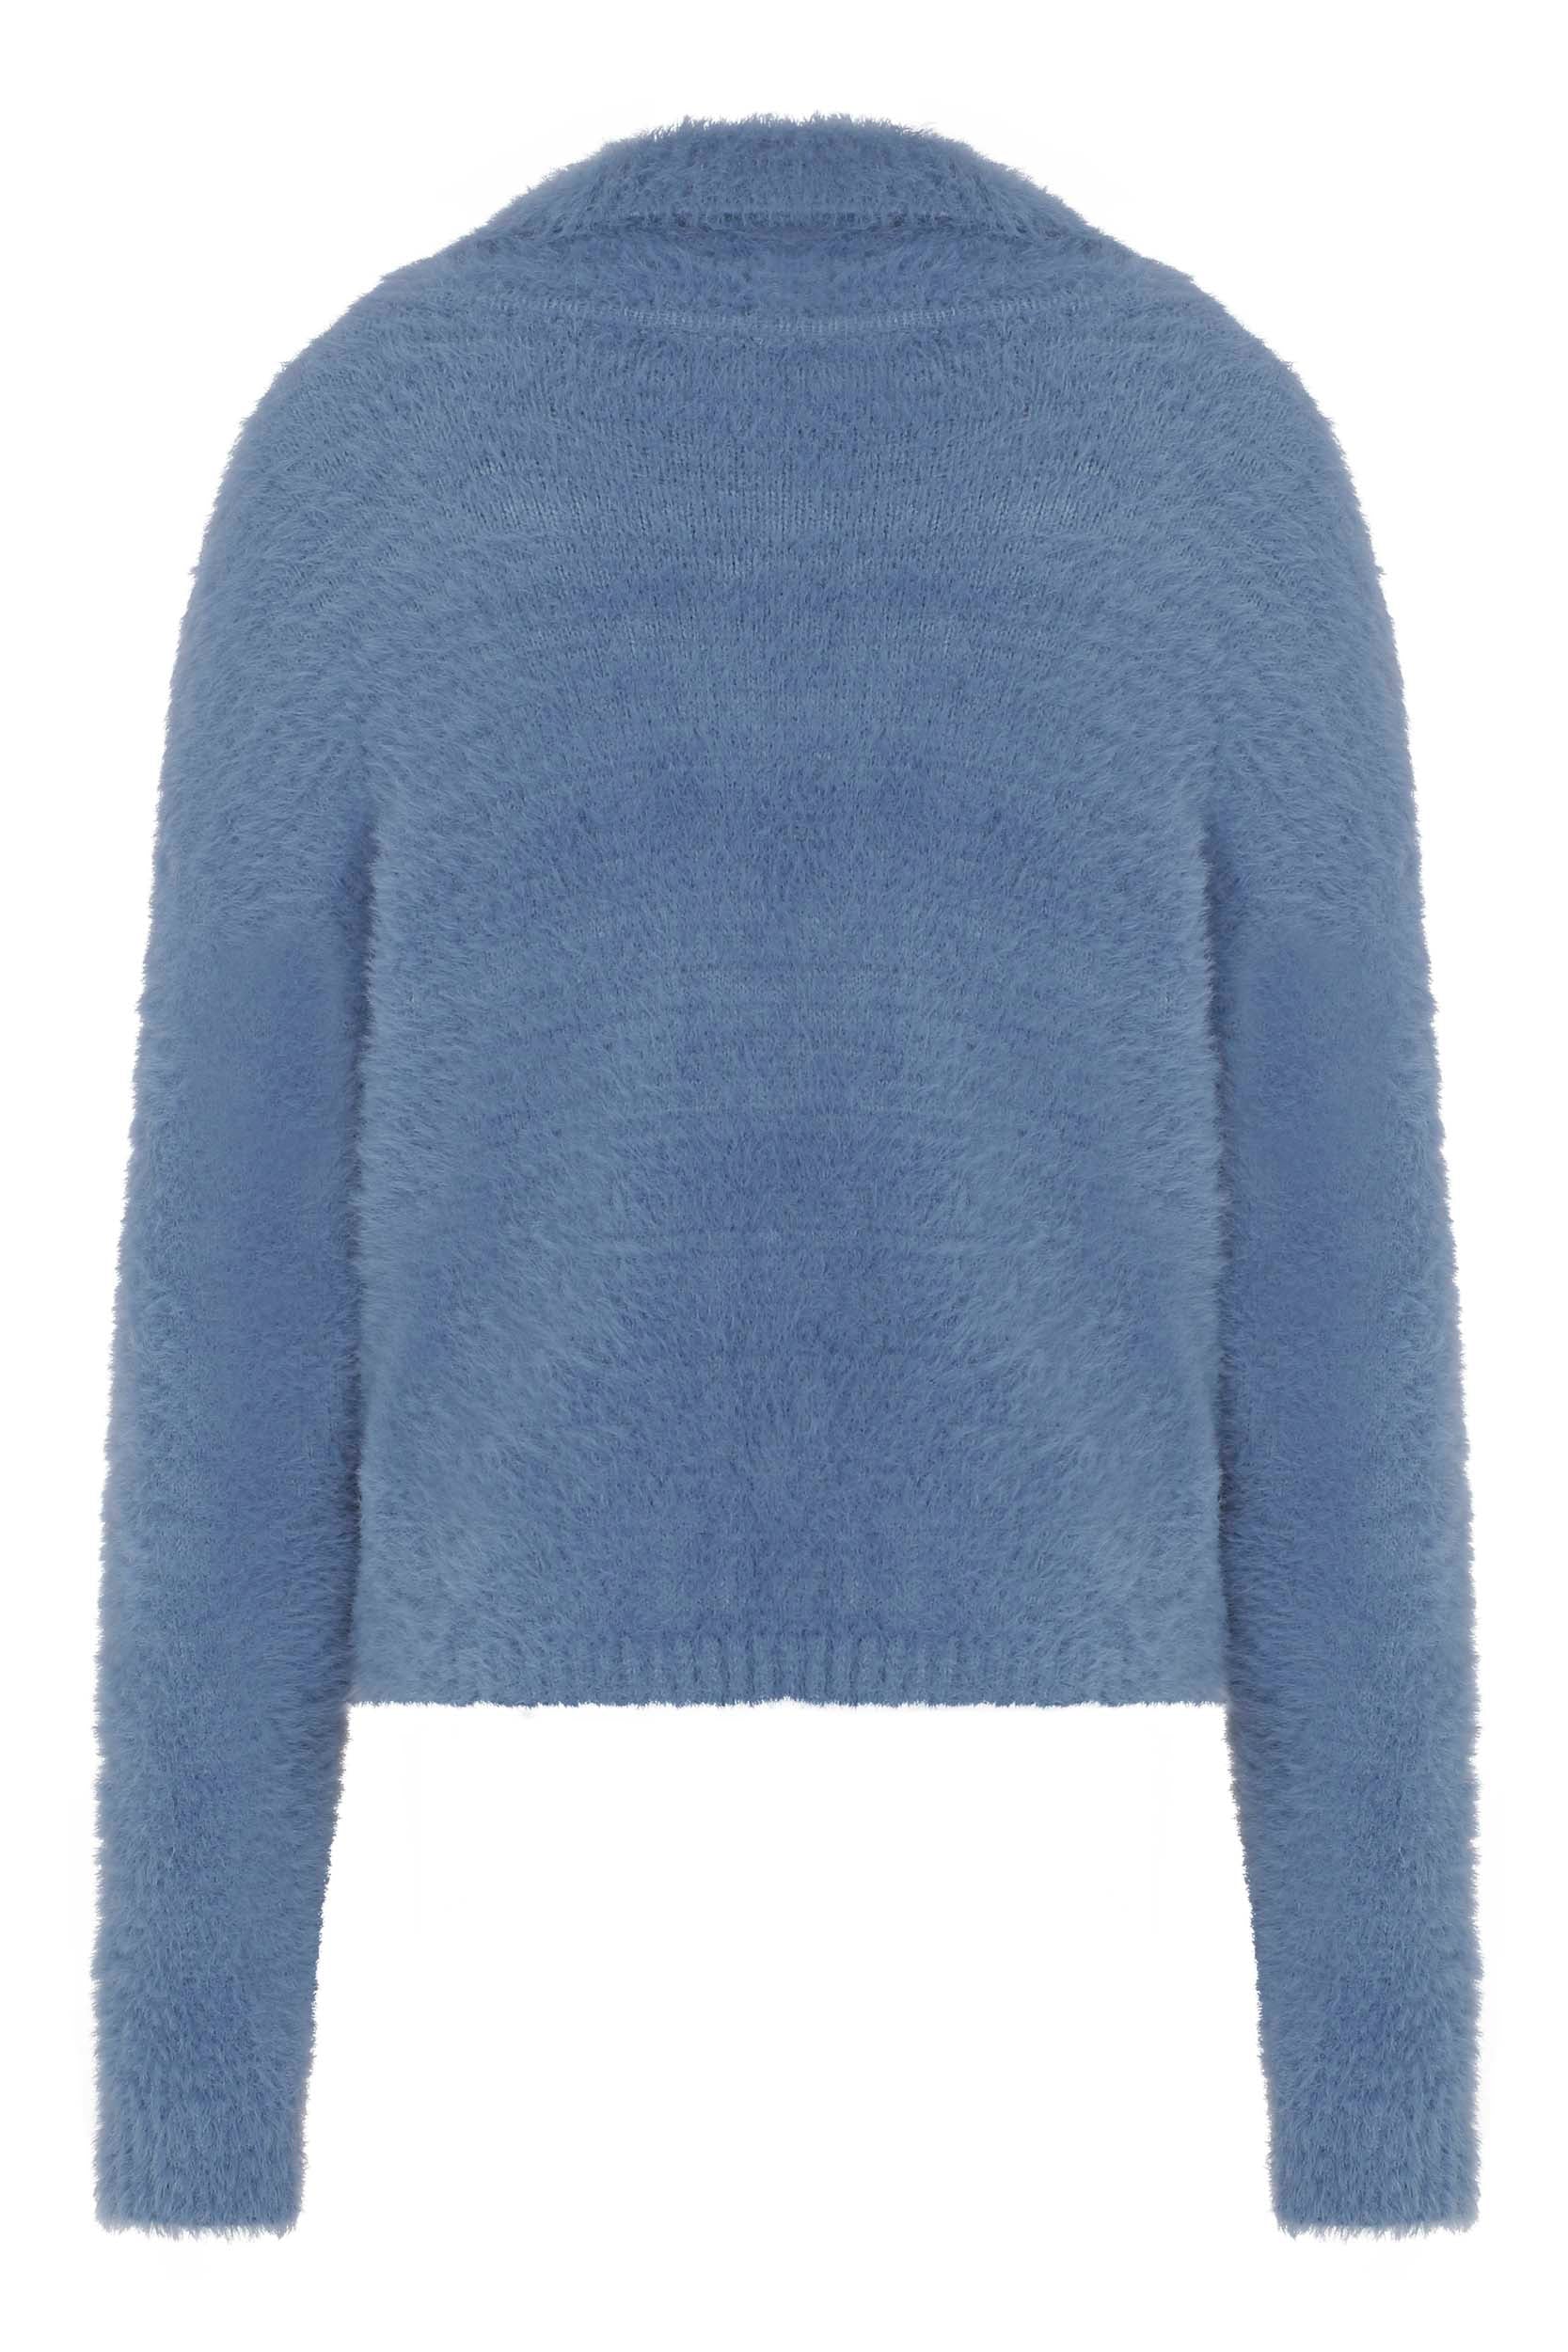 Basic Blue Knitwear Cardigan